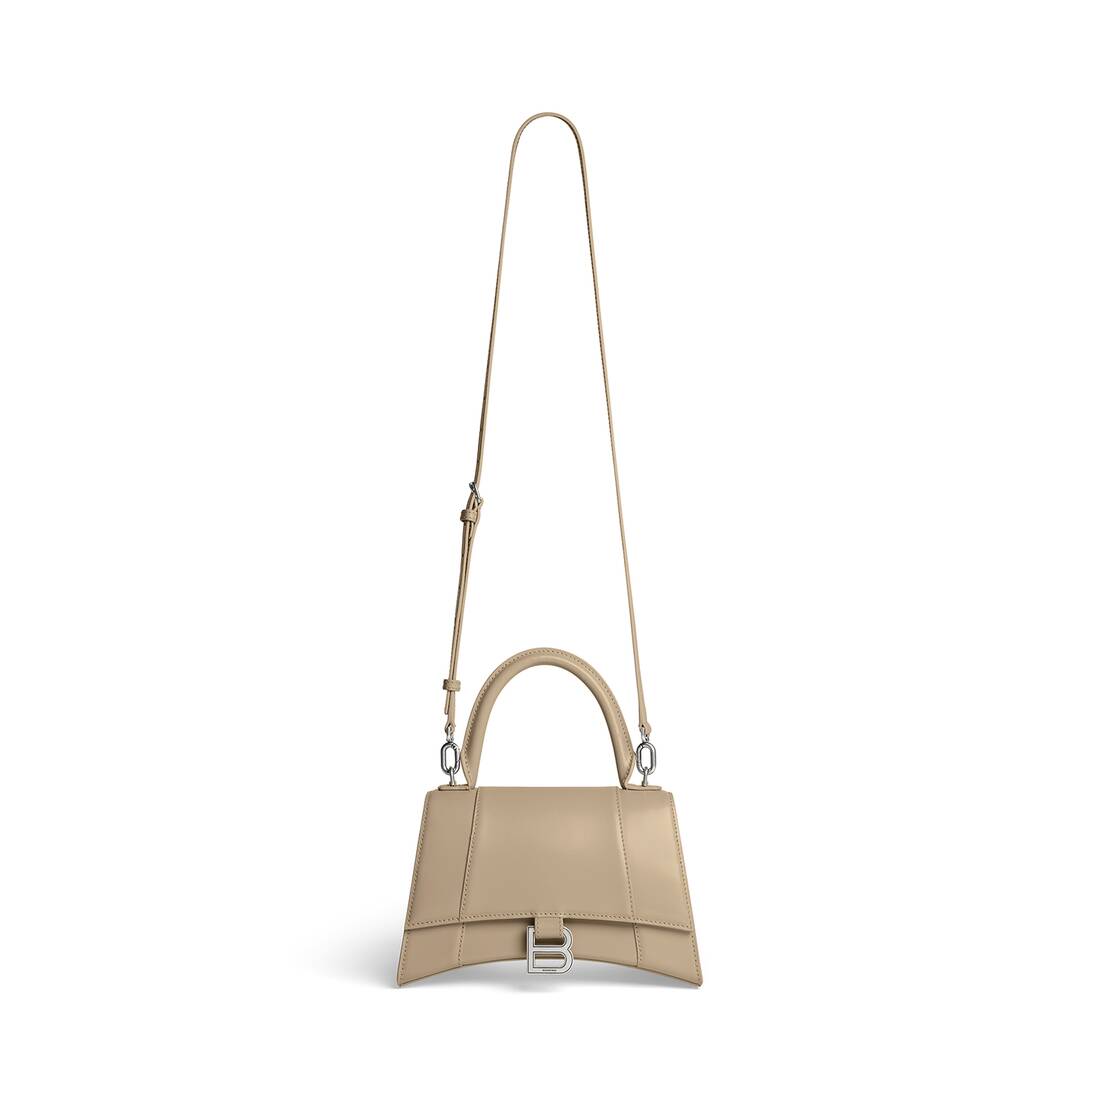 Balenciaga Hourglass Small Bag